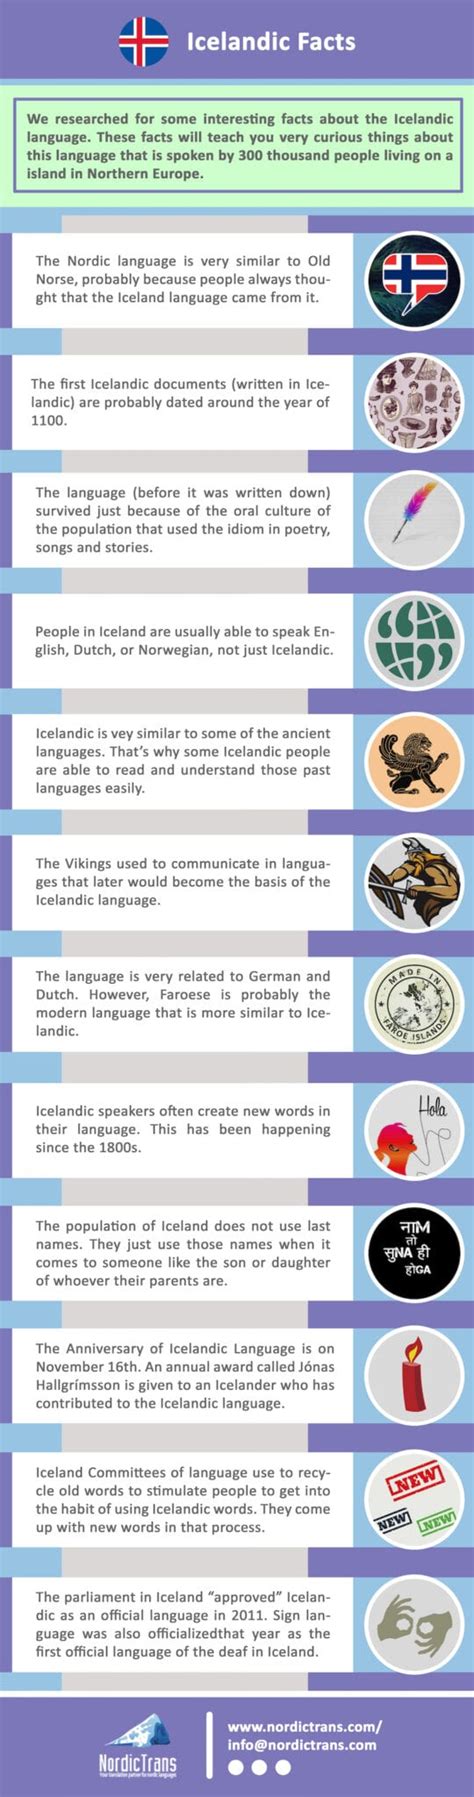 icelandic language facts easily explained   infographic